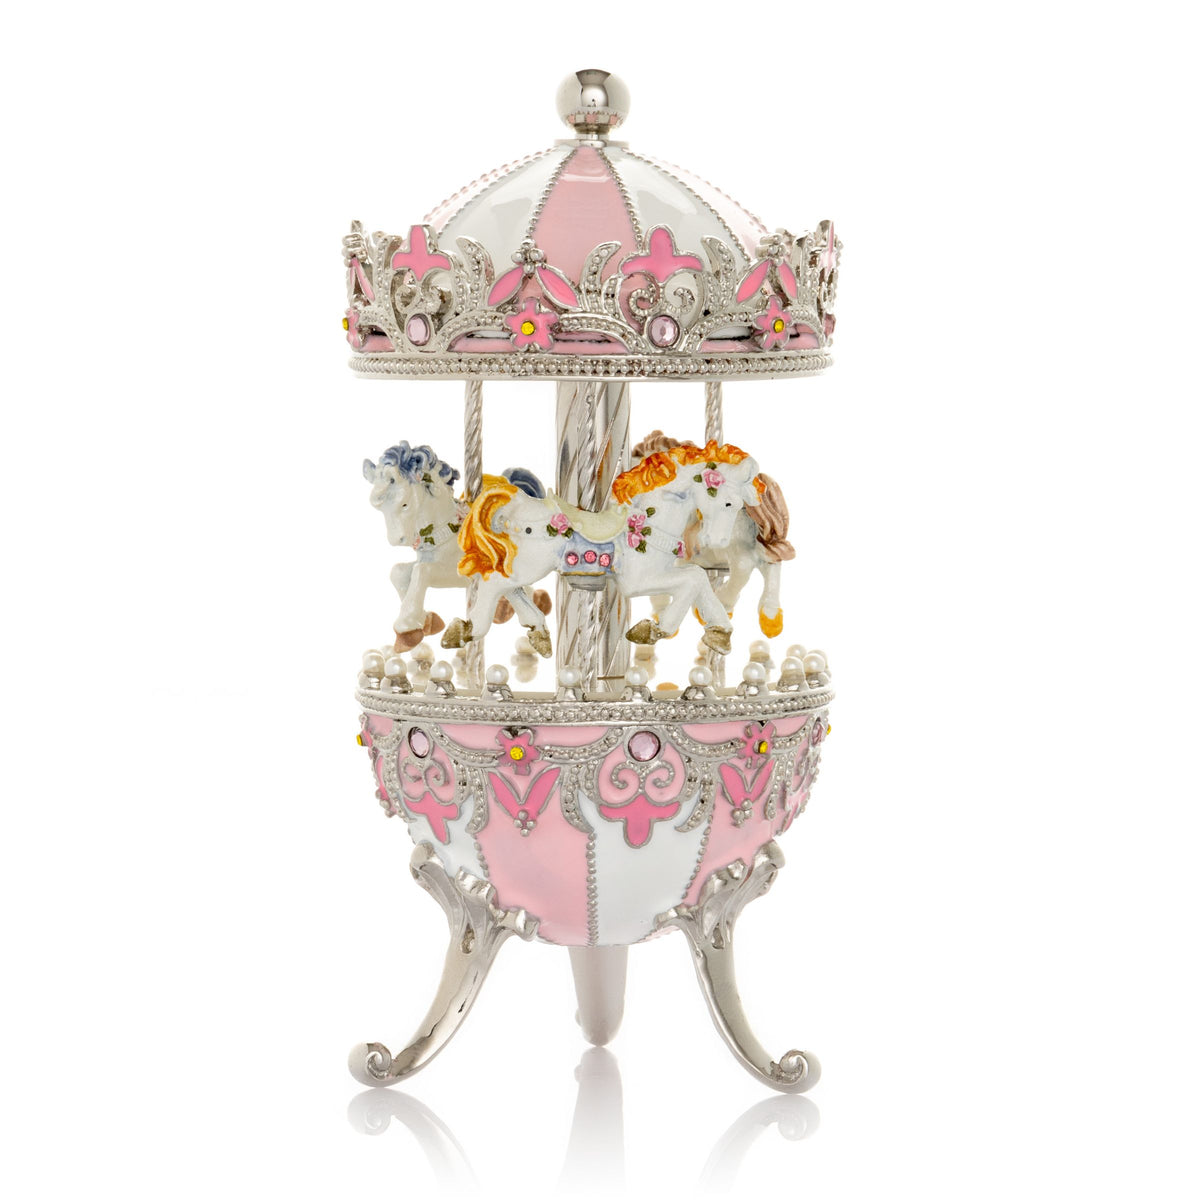 Rosafarbenes Fabergé-Ei mit aufziehbarem Pferdekarussell